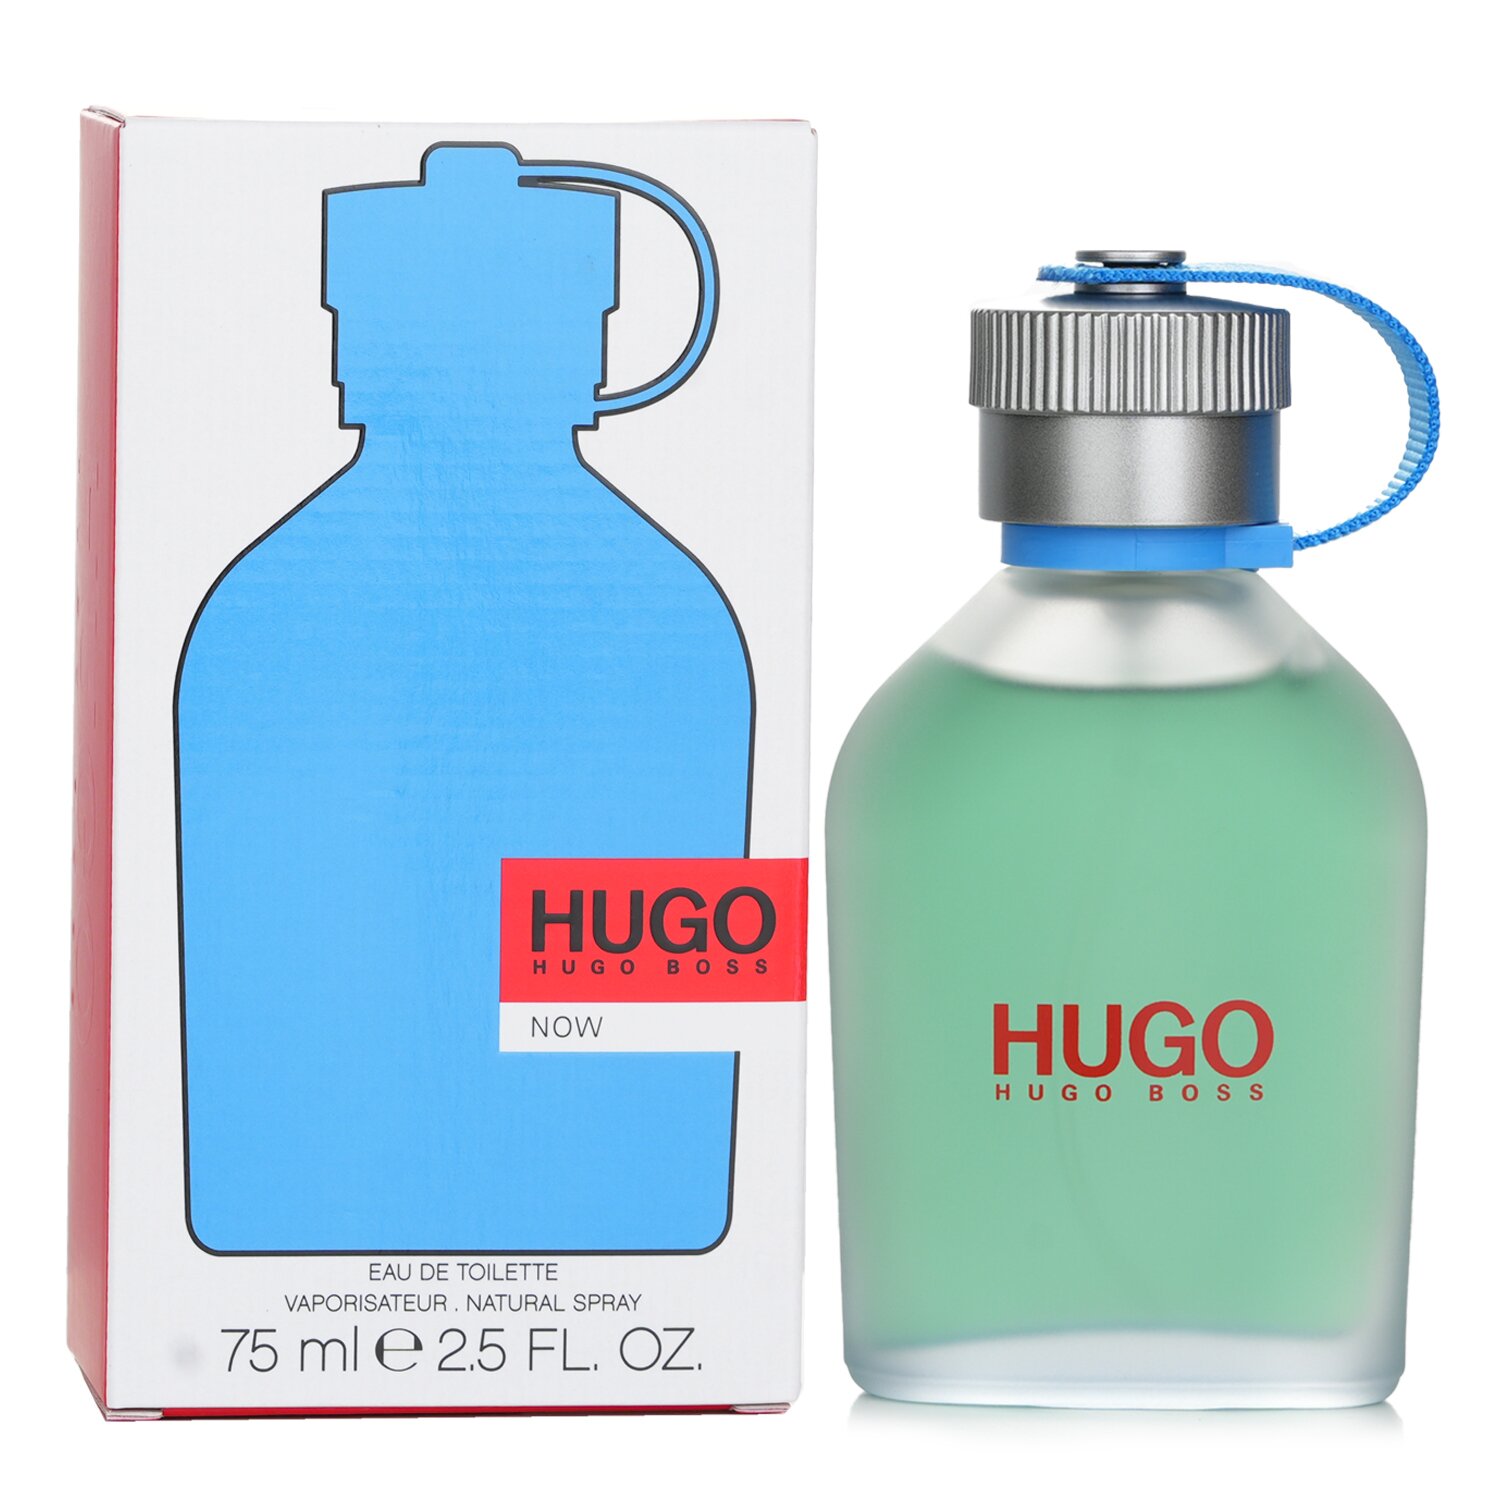 Hugo Boss 雨果博斯 慢活海洋調芳香水 75ml/2.56oz